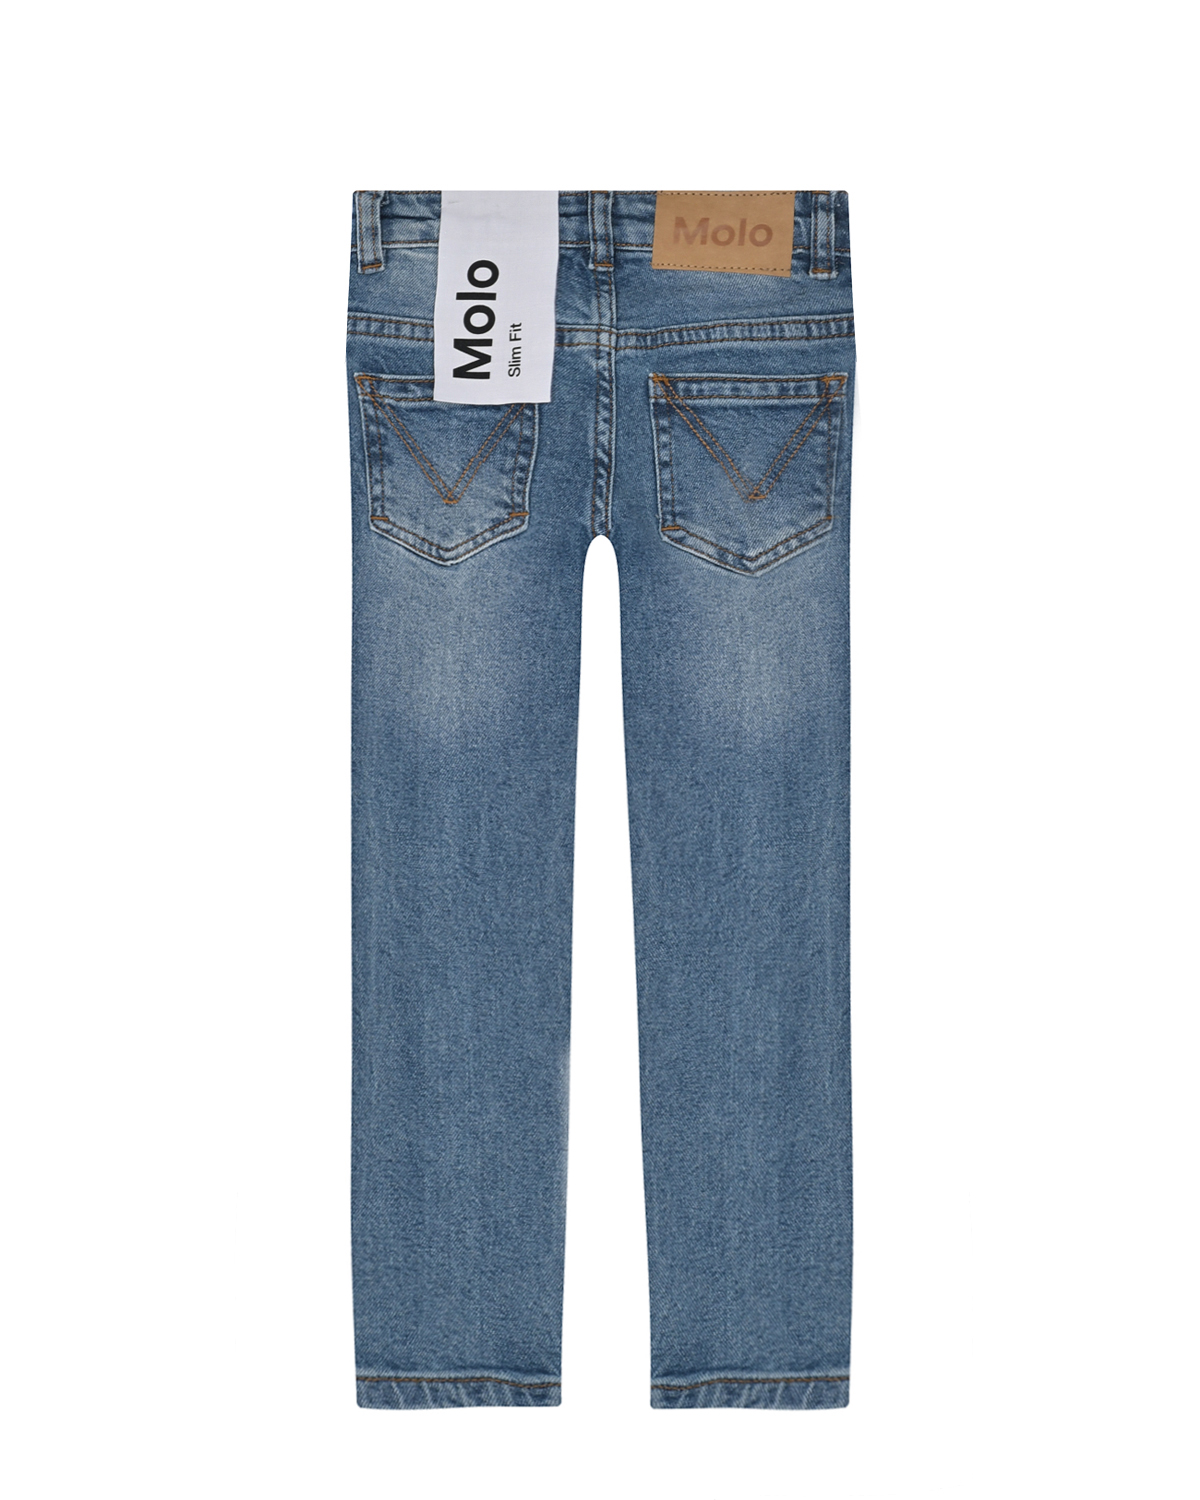 Брюки джинсовые Vintage Denim Molo детские, размер 110, цвет синий - фото 2